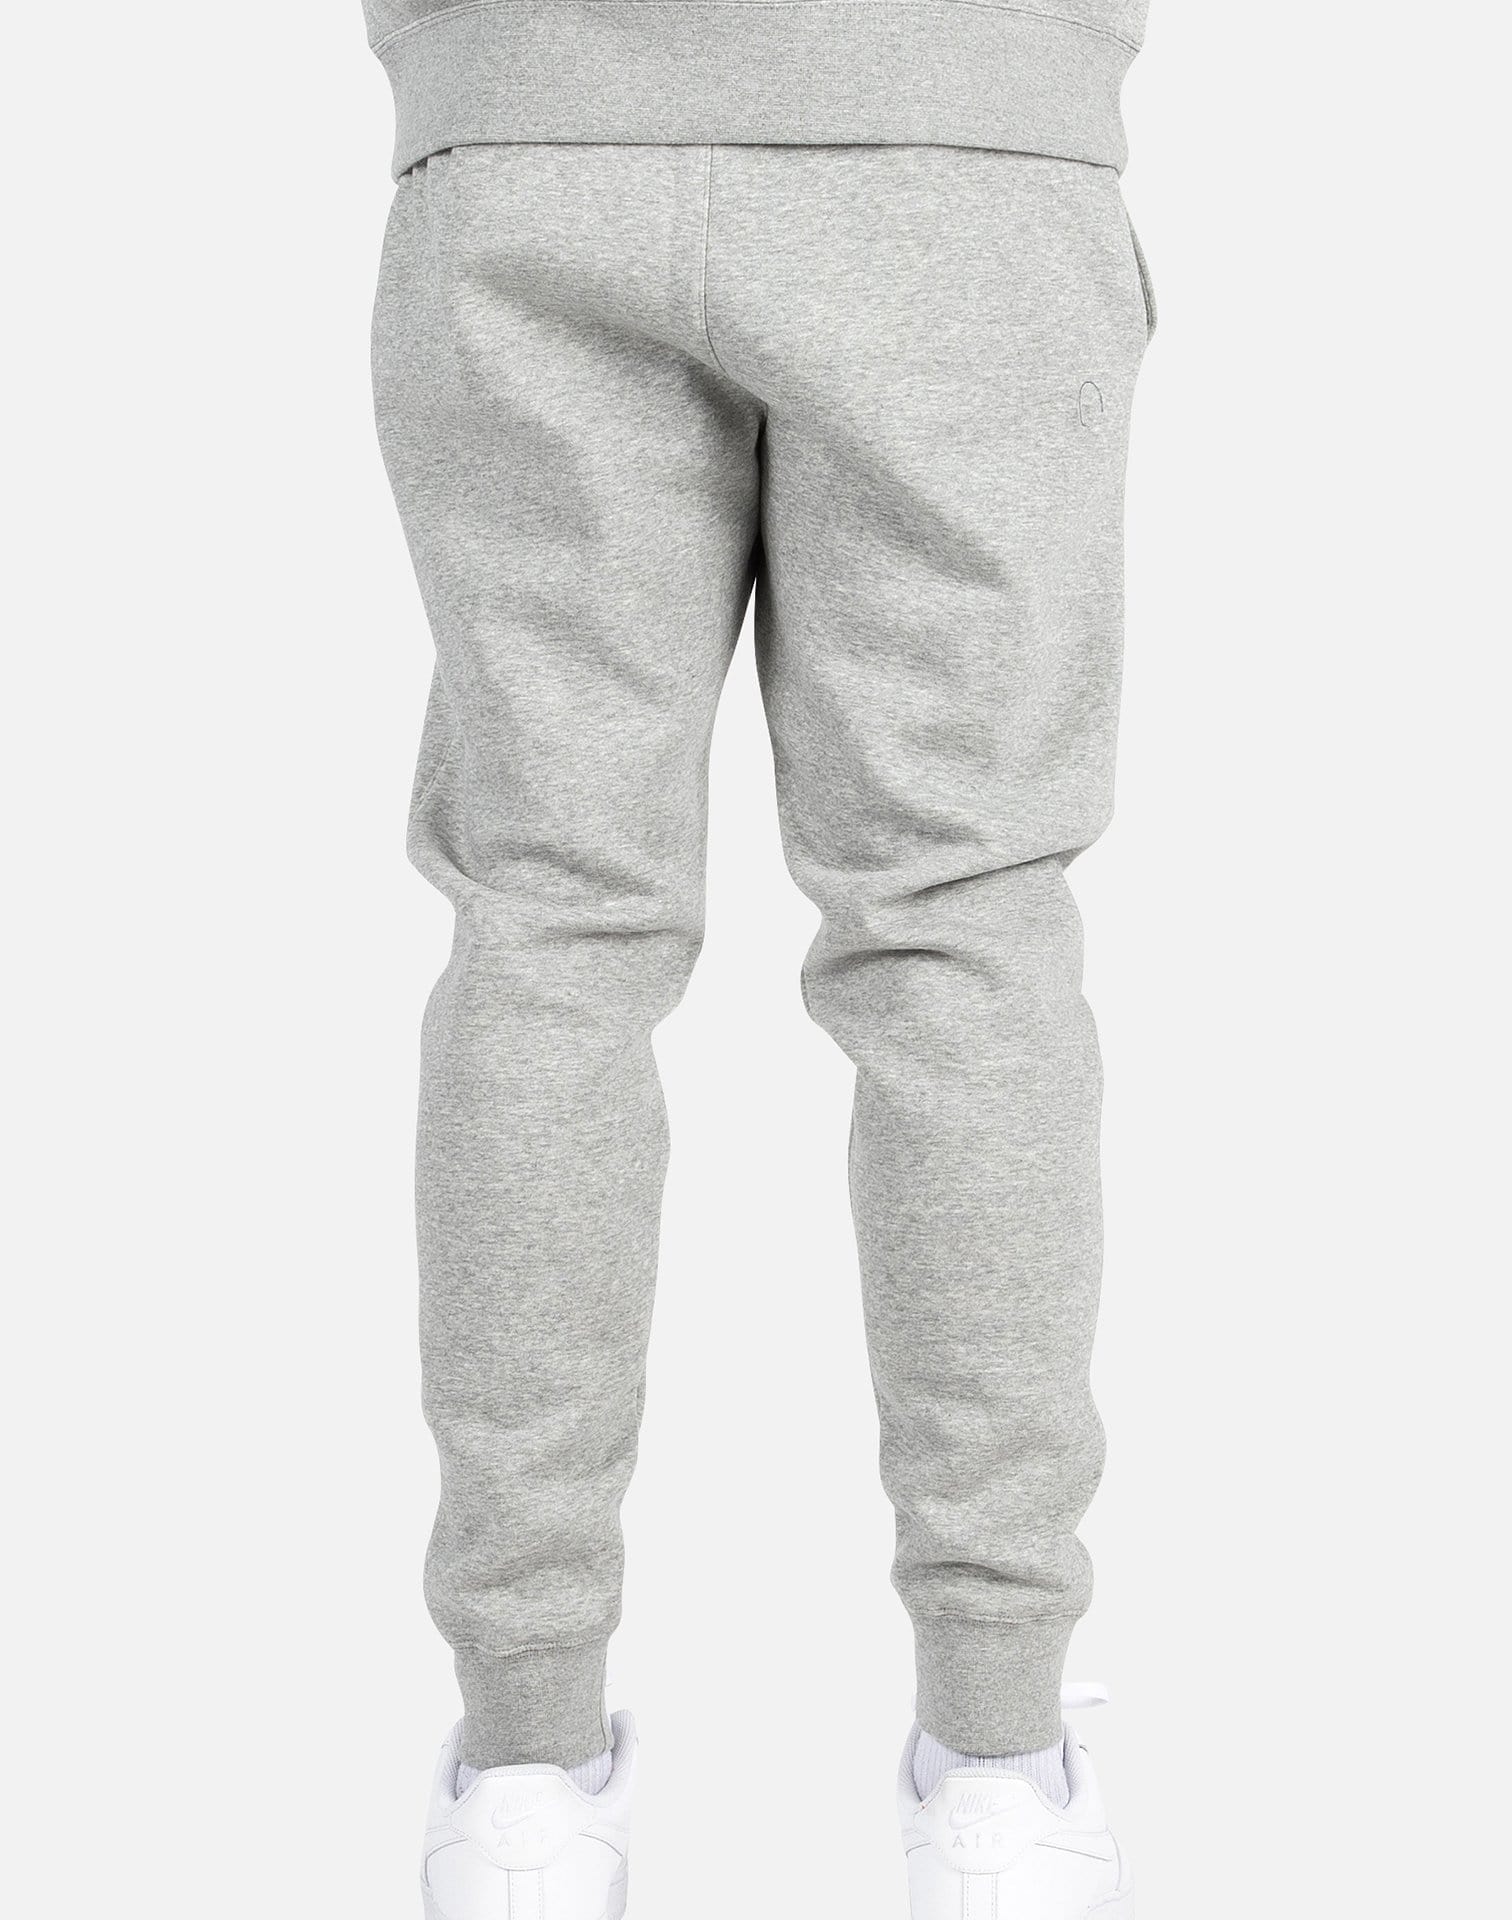 Nike Sportswear NSW Tech Fleece Jogger Pants Grey BV3472-063 Womens Large